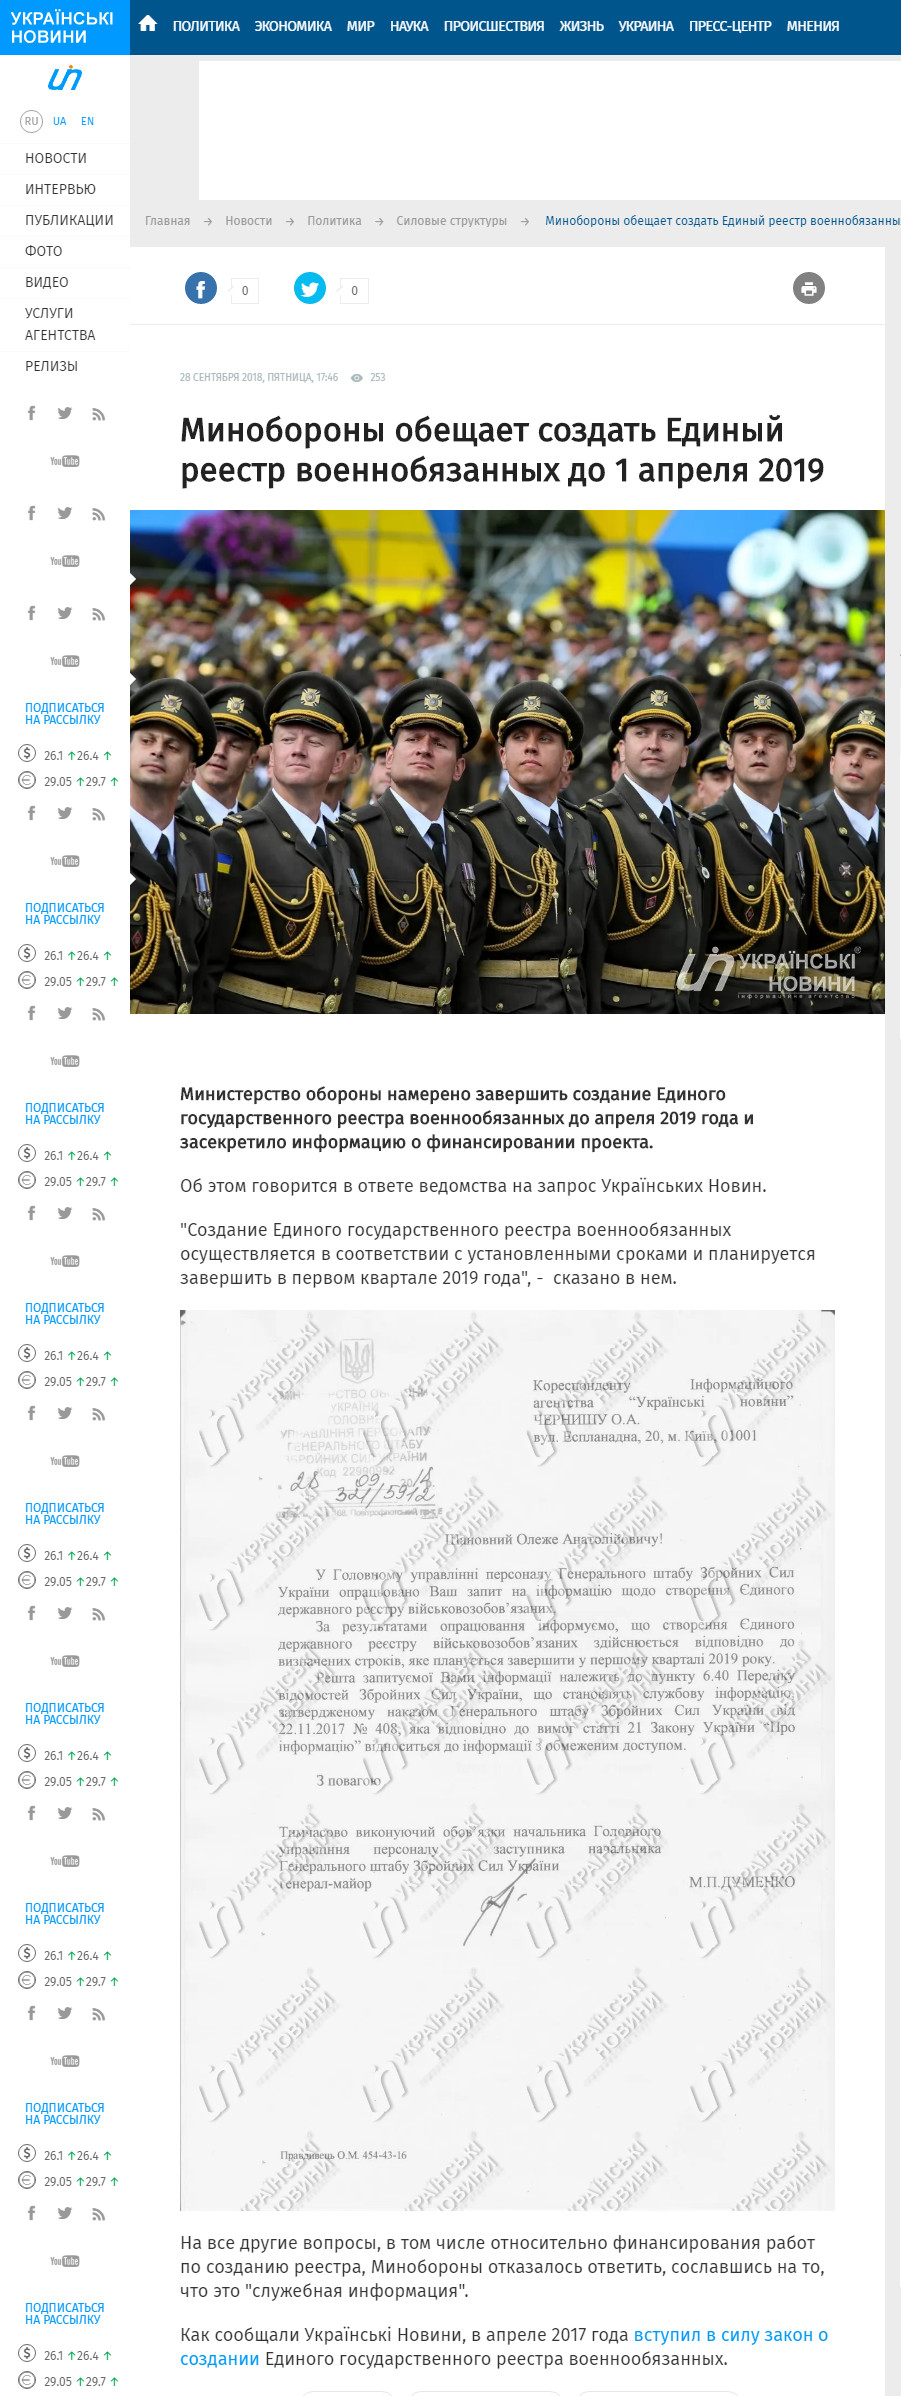 https://ukranews.com/news/586607-mynoborony-obeshhaet-sozdat-edynyy-reestr-voennobyazannykh-do-1-aprelya-2019